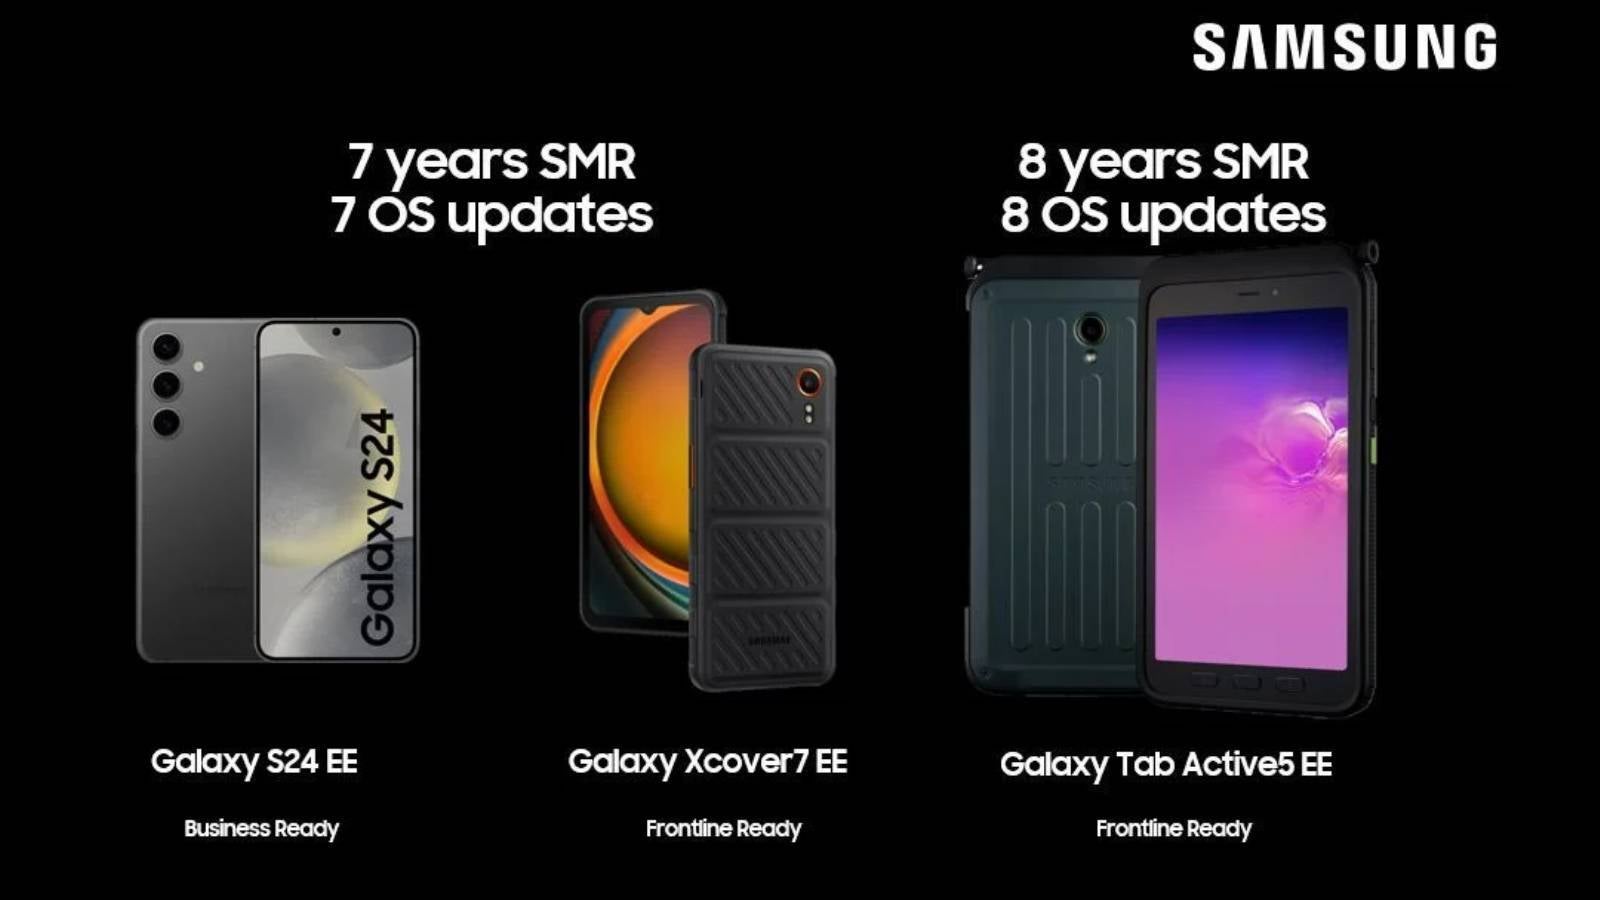 Bir Samsung yöneticisinin paylaştığı ve silinen bir LinkedIn gönderisi, Galaxy Tab Active 5 kurumsal sürümünün sekiz yıl boyunca destekleneceğini söyledi - Samsung'un yeni tableti, şimdi silinmiş olan gönderide Galaxy S24'ten daha fazla güncelleme sözü verdi